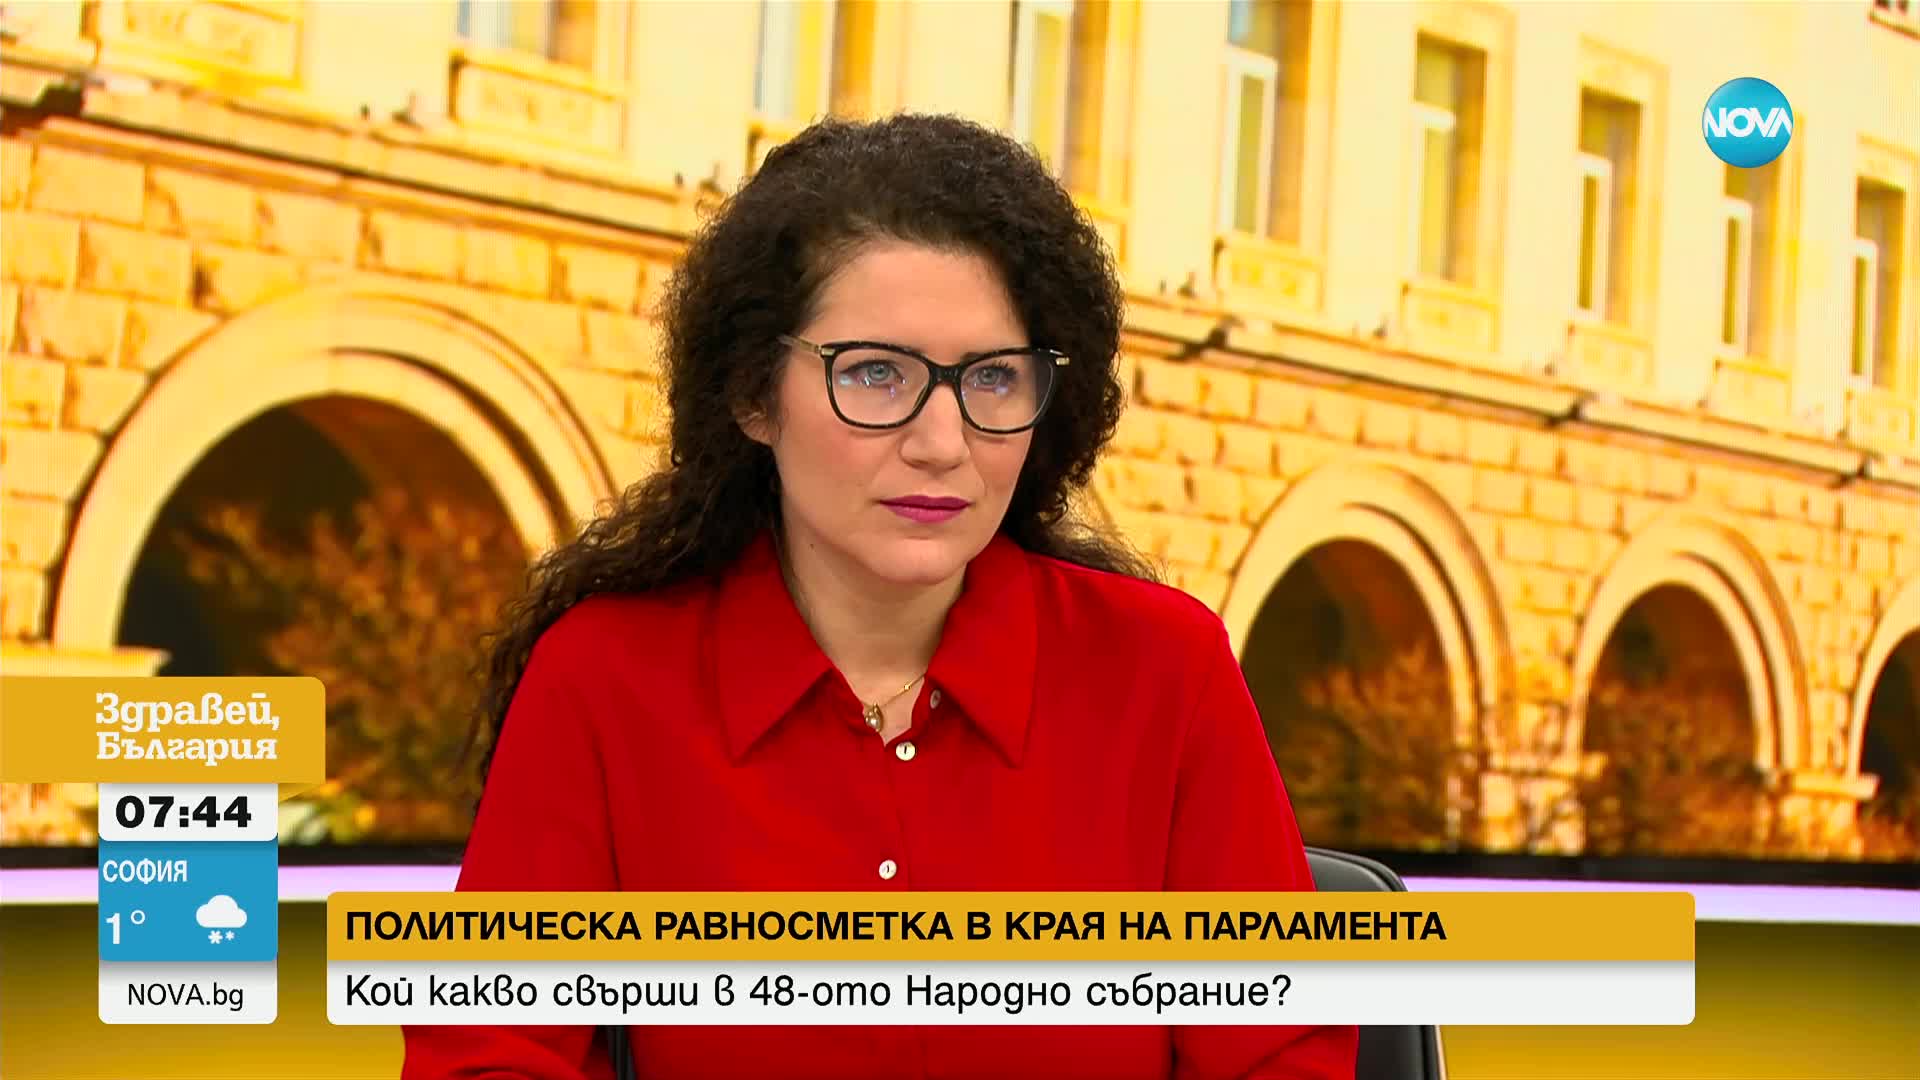 Константинова: Никой от нас не е женен за мястото и поста си, вече сме излъчвали трима кандидати за